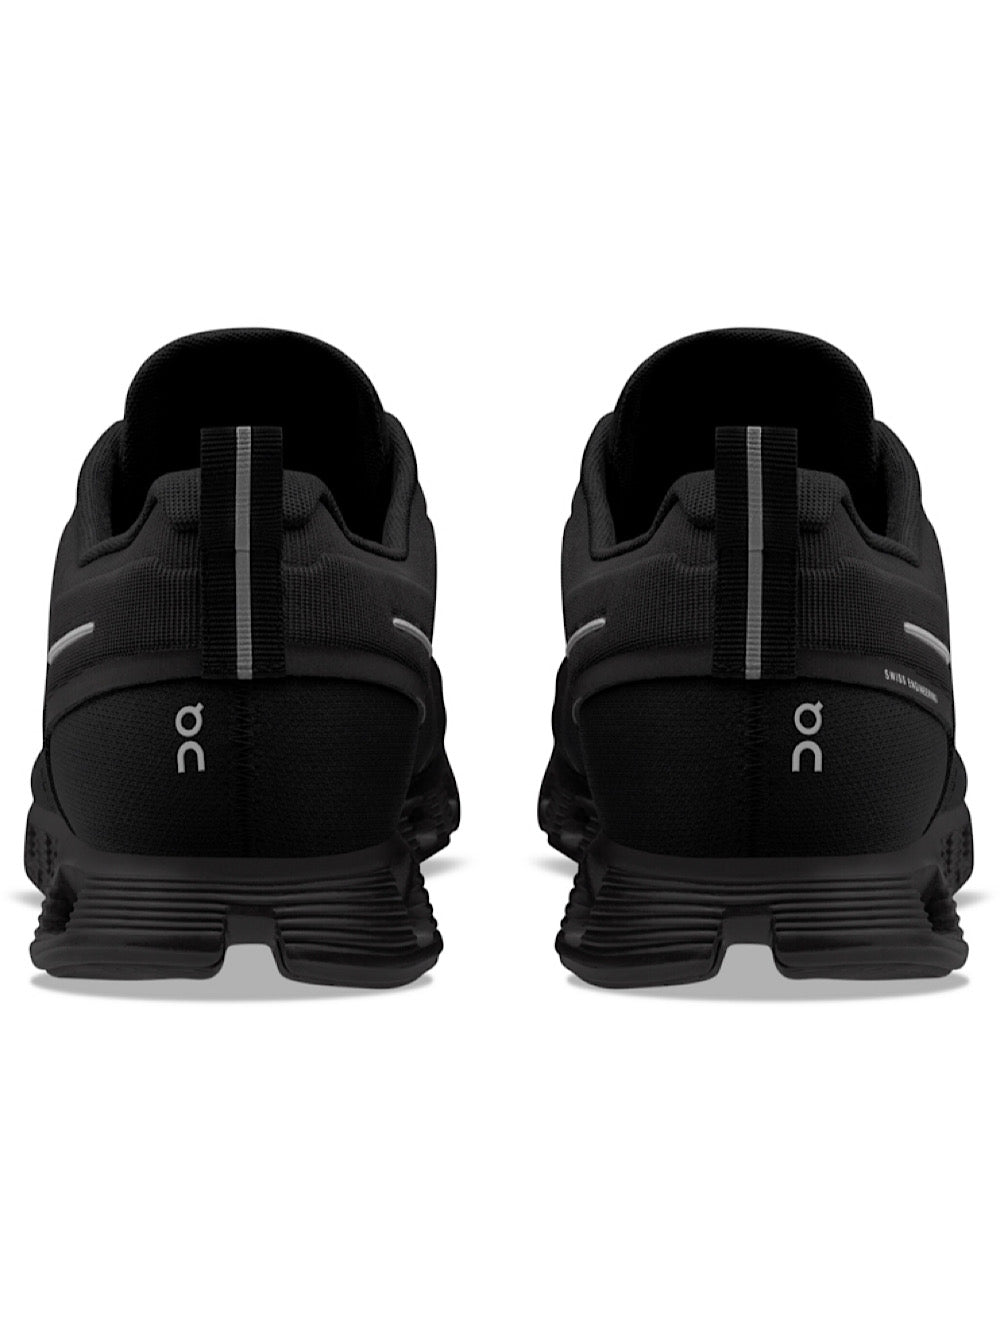 ON Sneakers Running mod. Cloud 5 Waterproof black